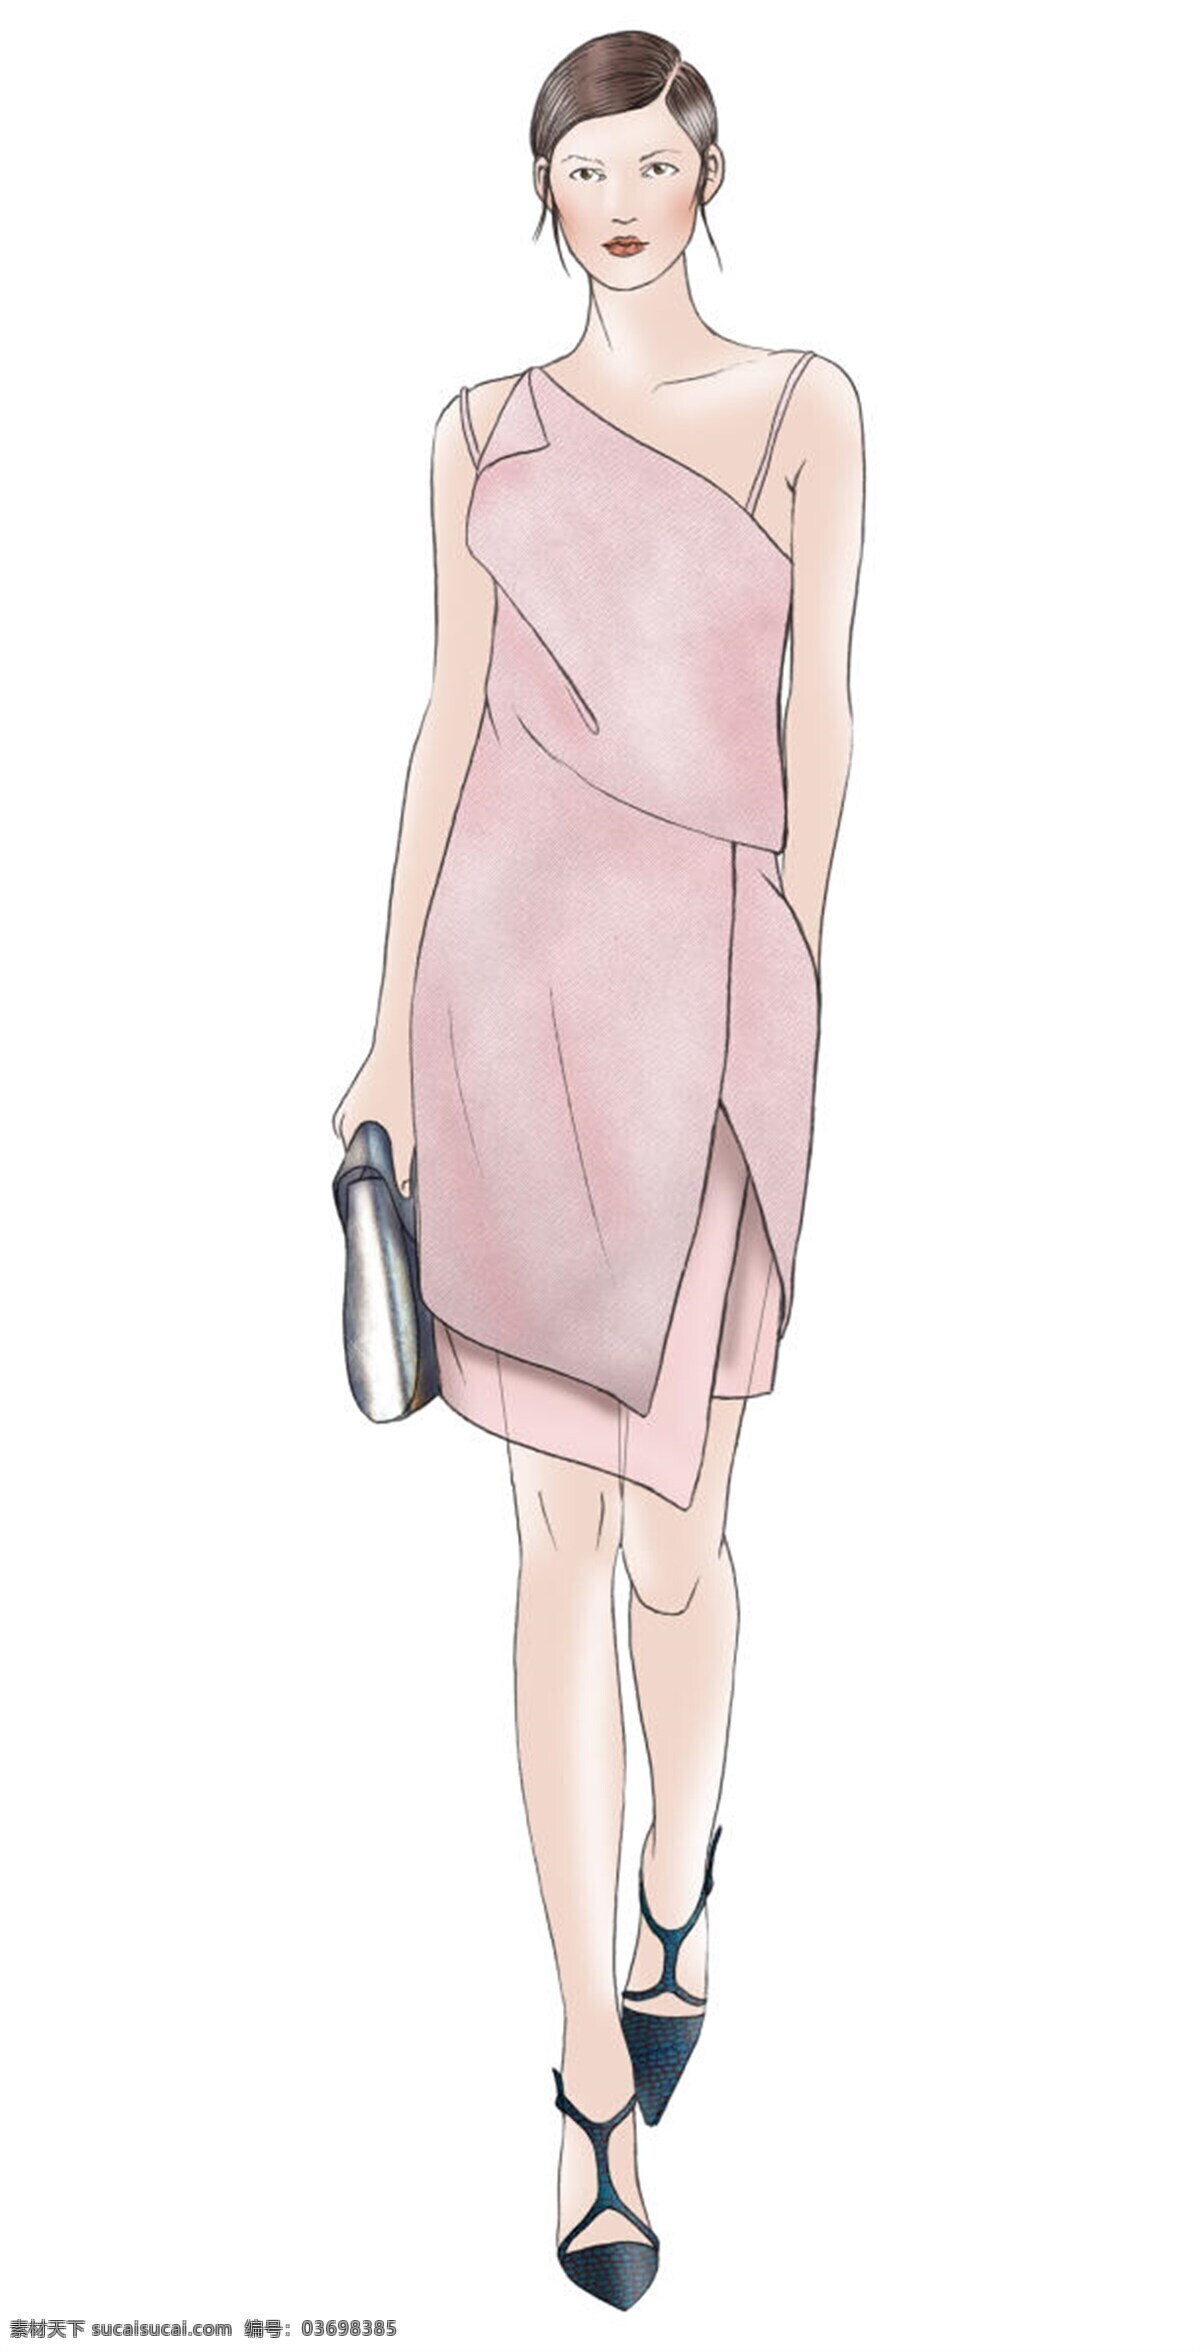 服装设计 服装效果图 女装 简约 温婉 粉色 吊带 裙 效果图 深色单鞋 粉色吊带裙